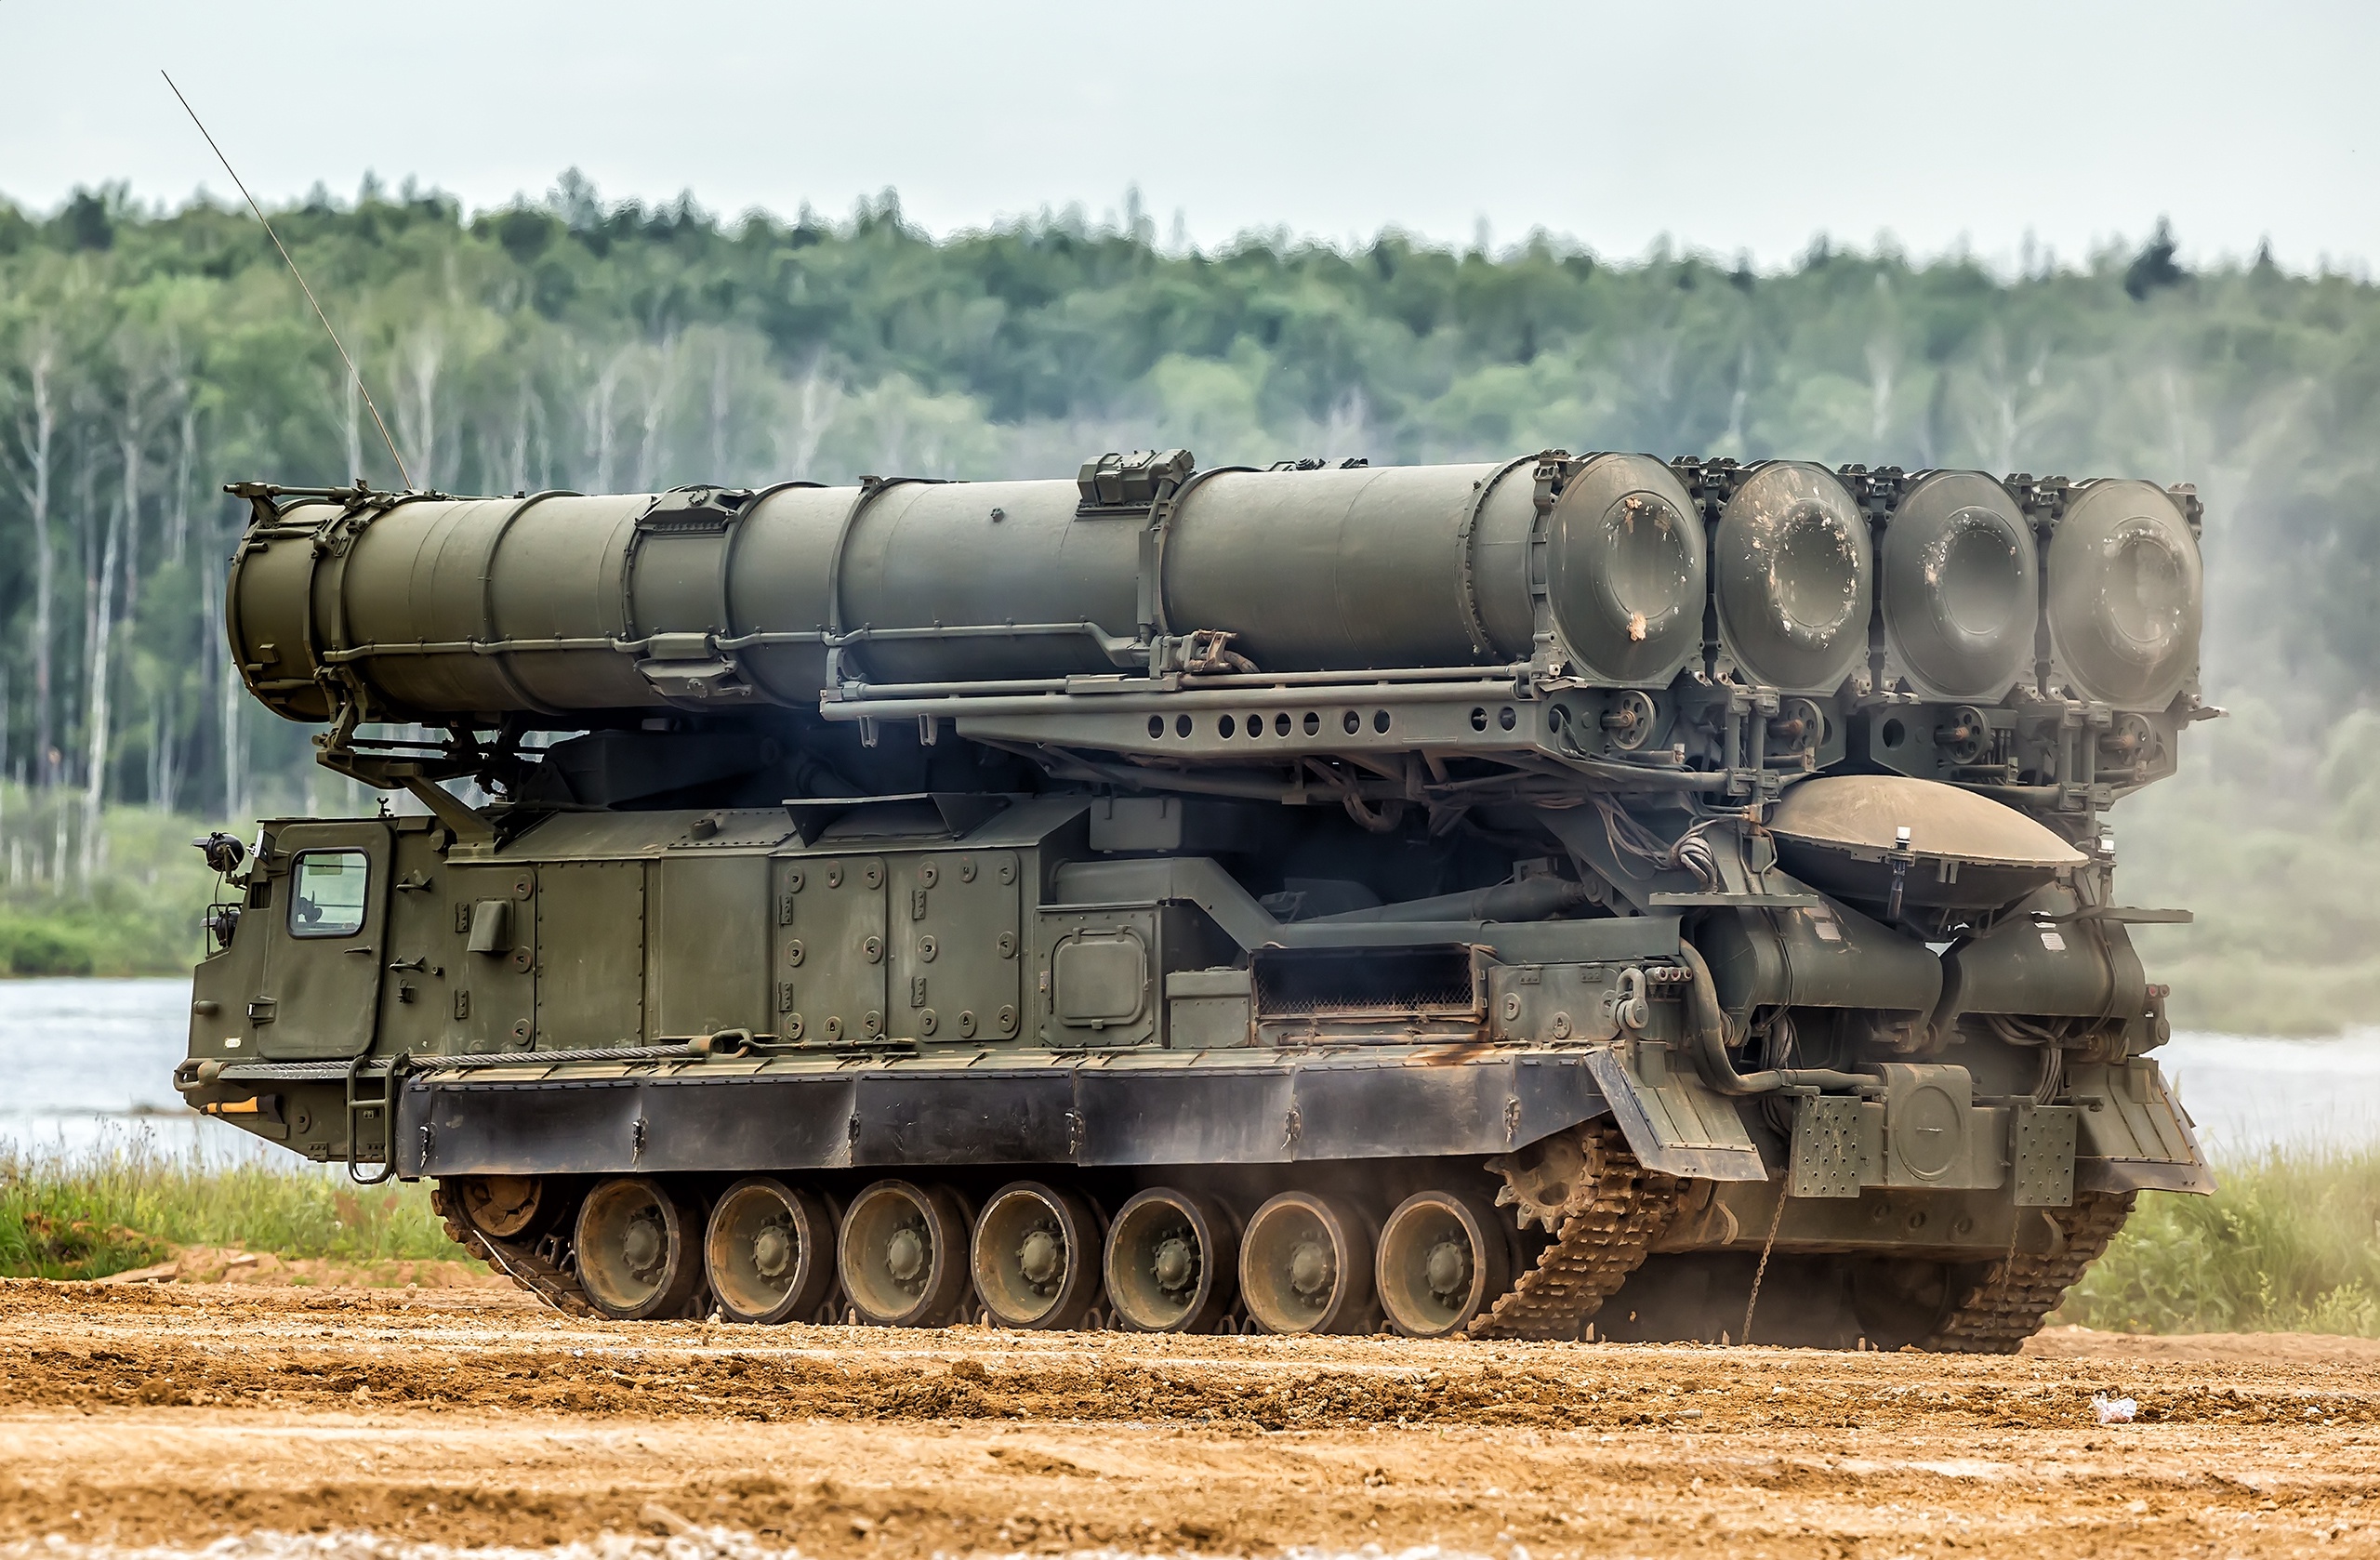 Сильнейшее оружие россии. С-300 ракетный комплекс. ЗРК Антей 2500. 9а85 ЗРС С-300в. Бук 300.